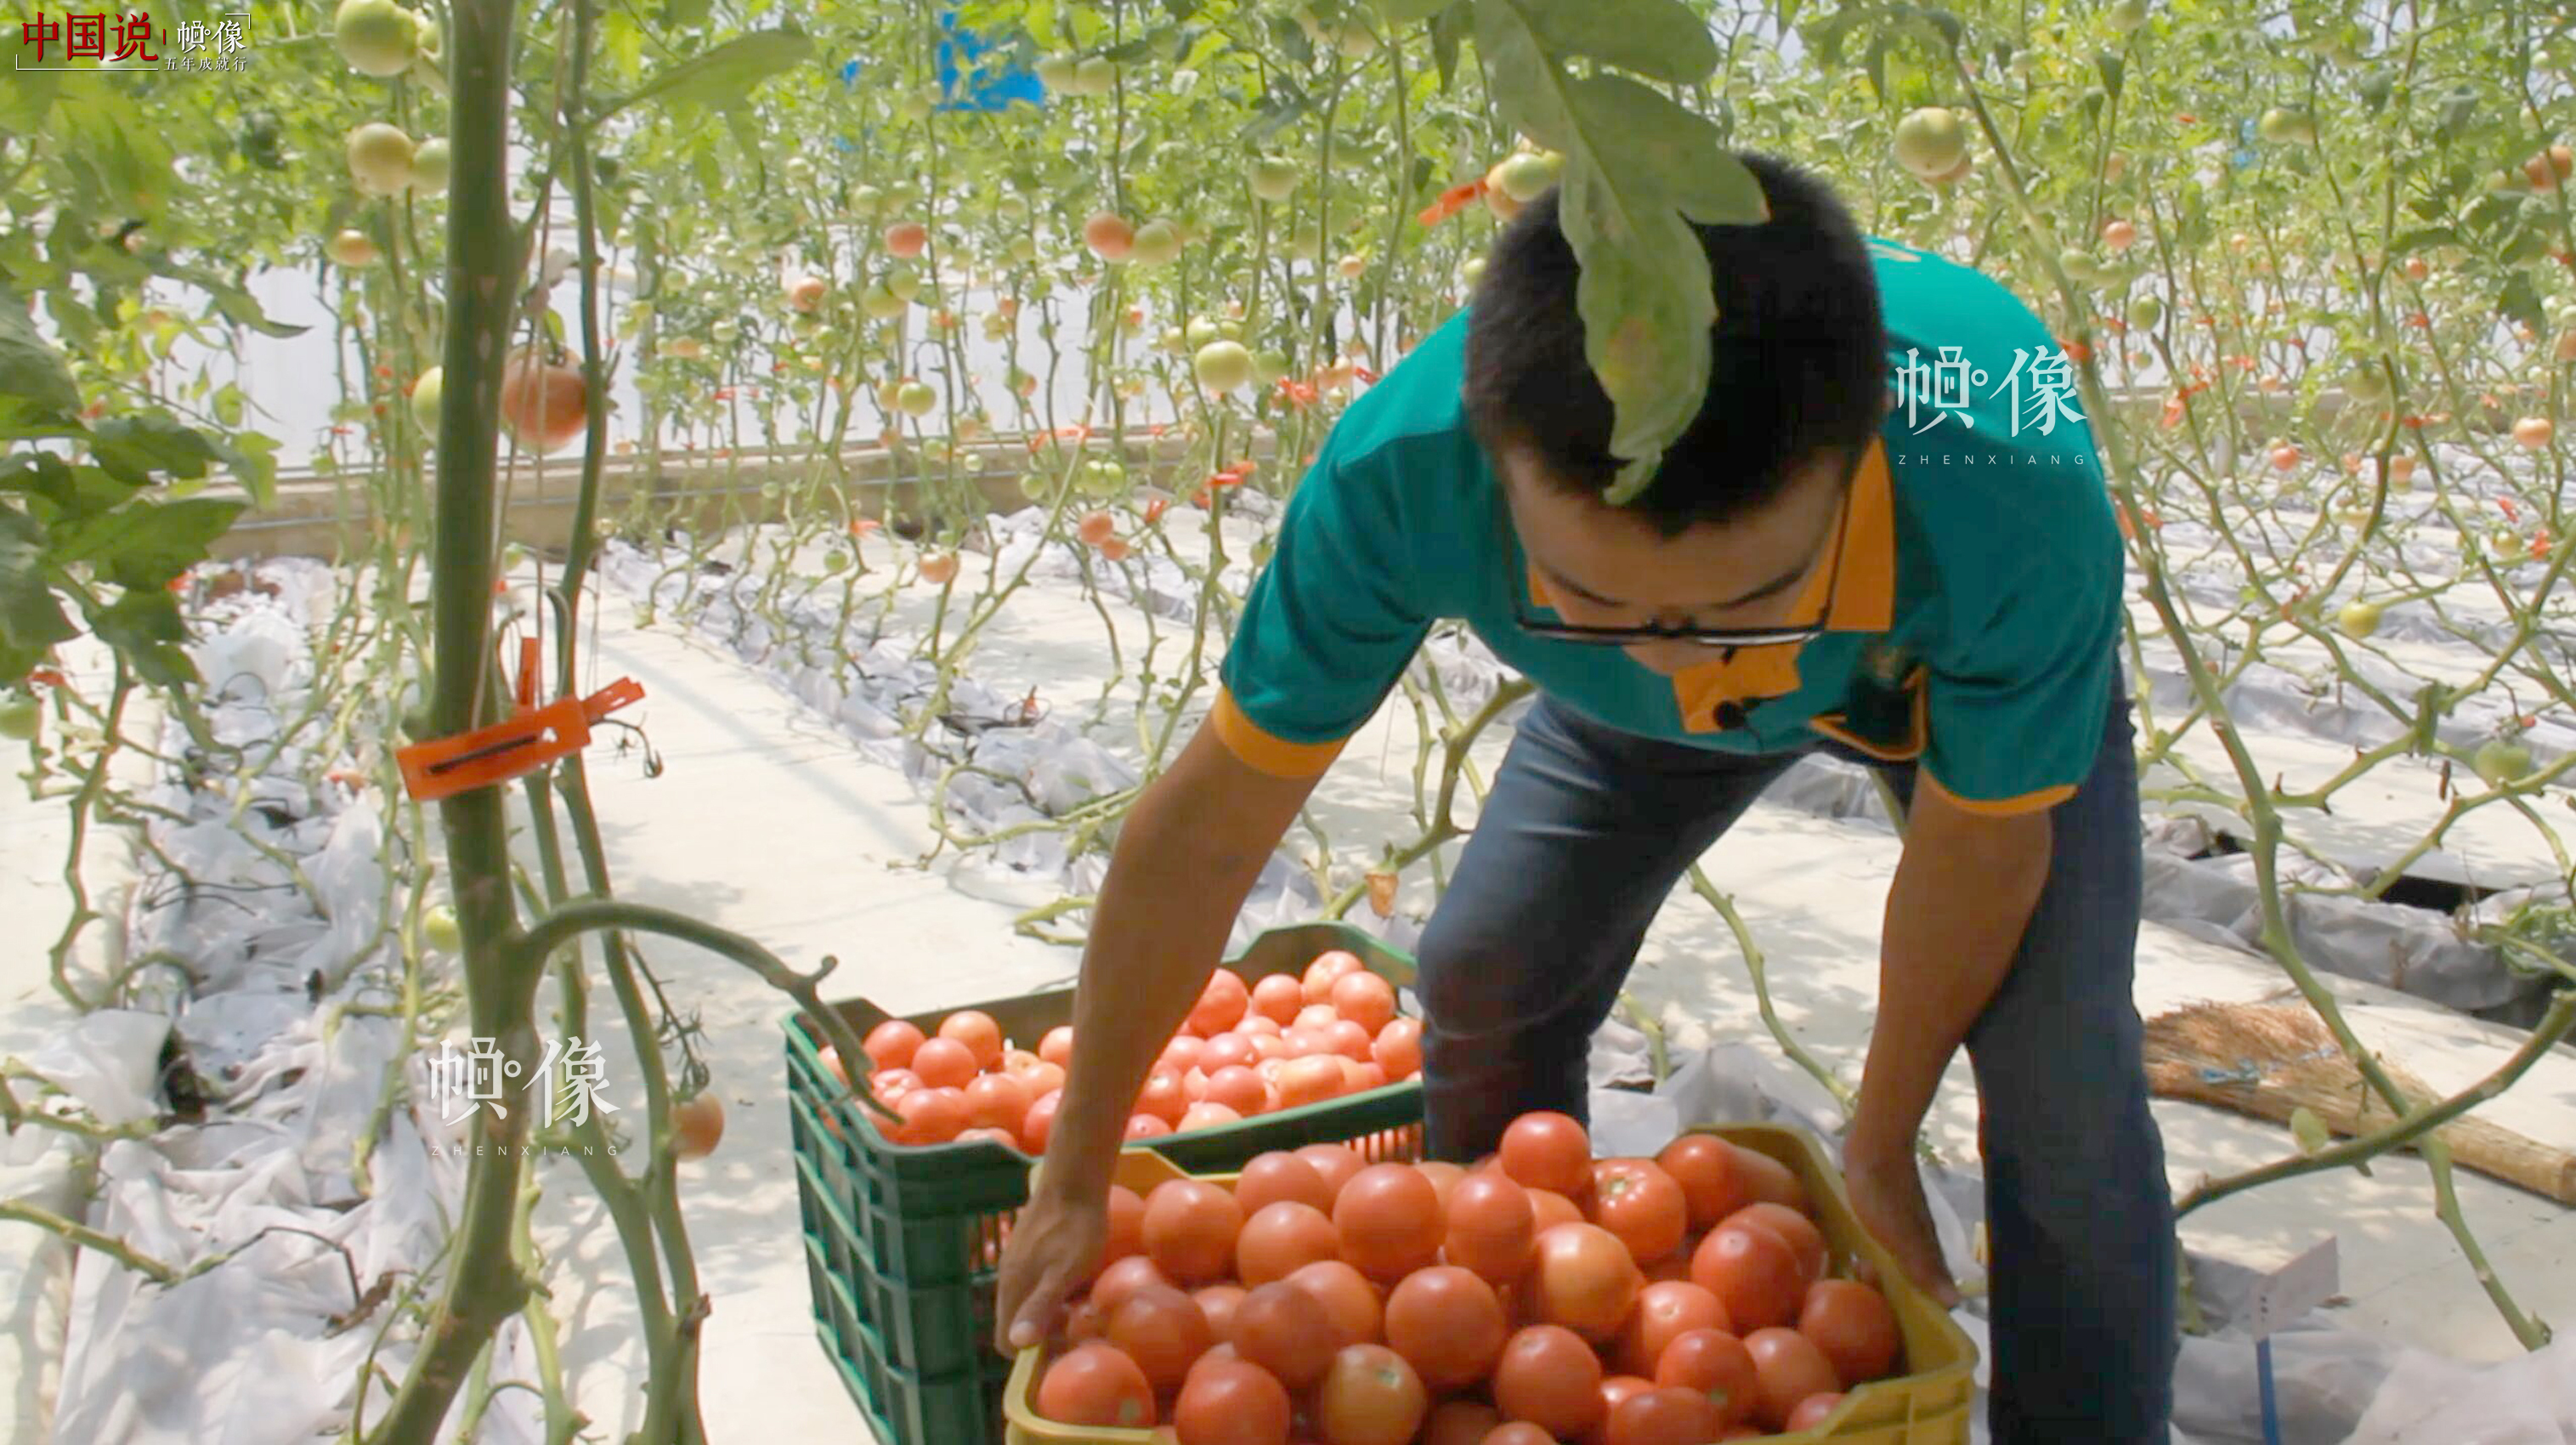 北京天安农业小汤山特菜基地技术员对蔬菜进行分拣。 中国网记者 赵超 摄